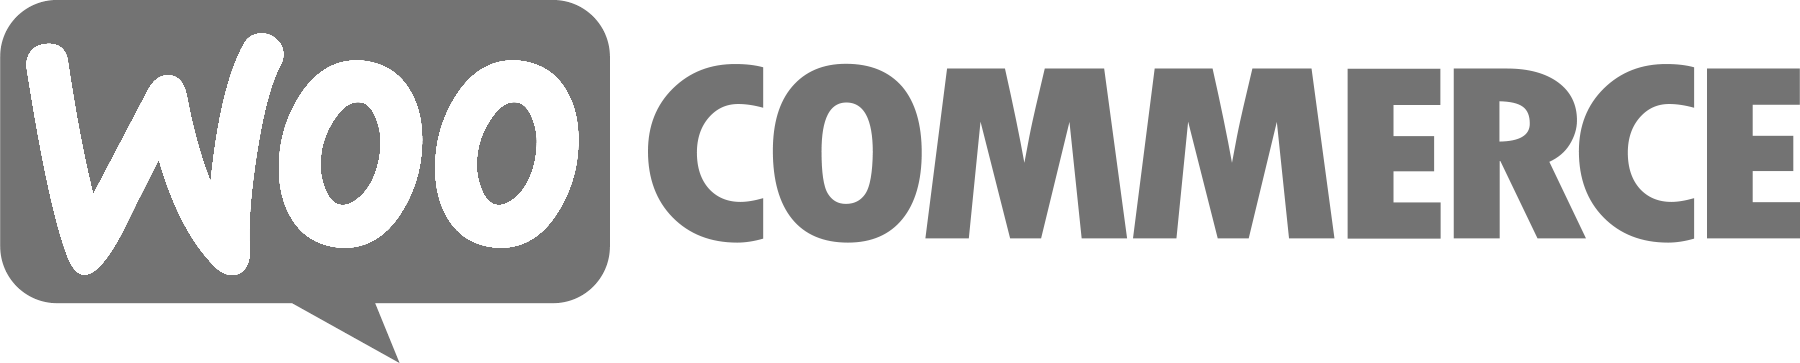 woo commerce logo